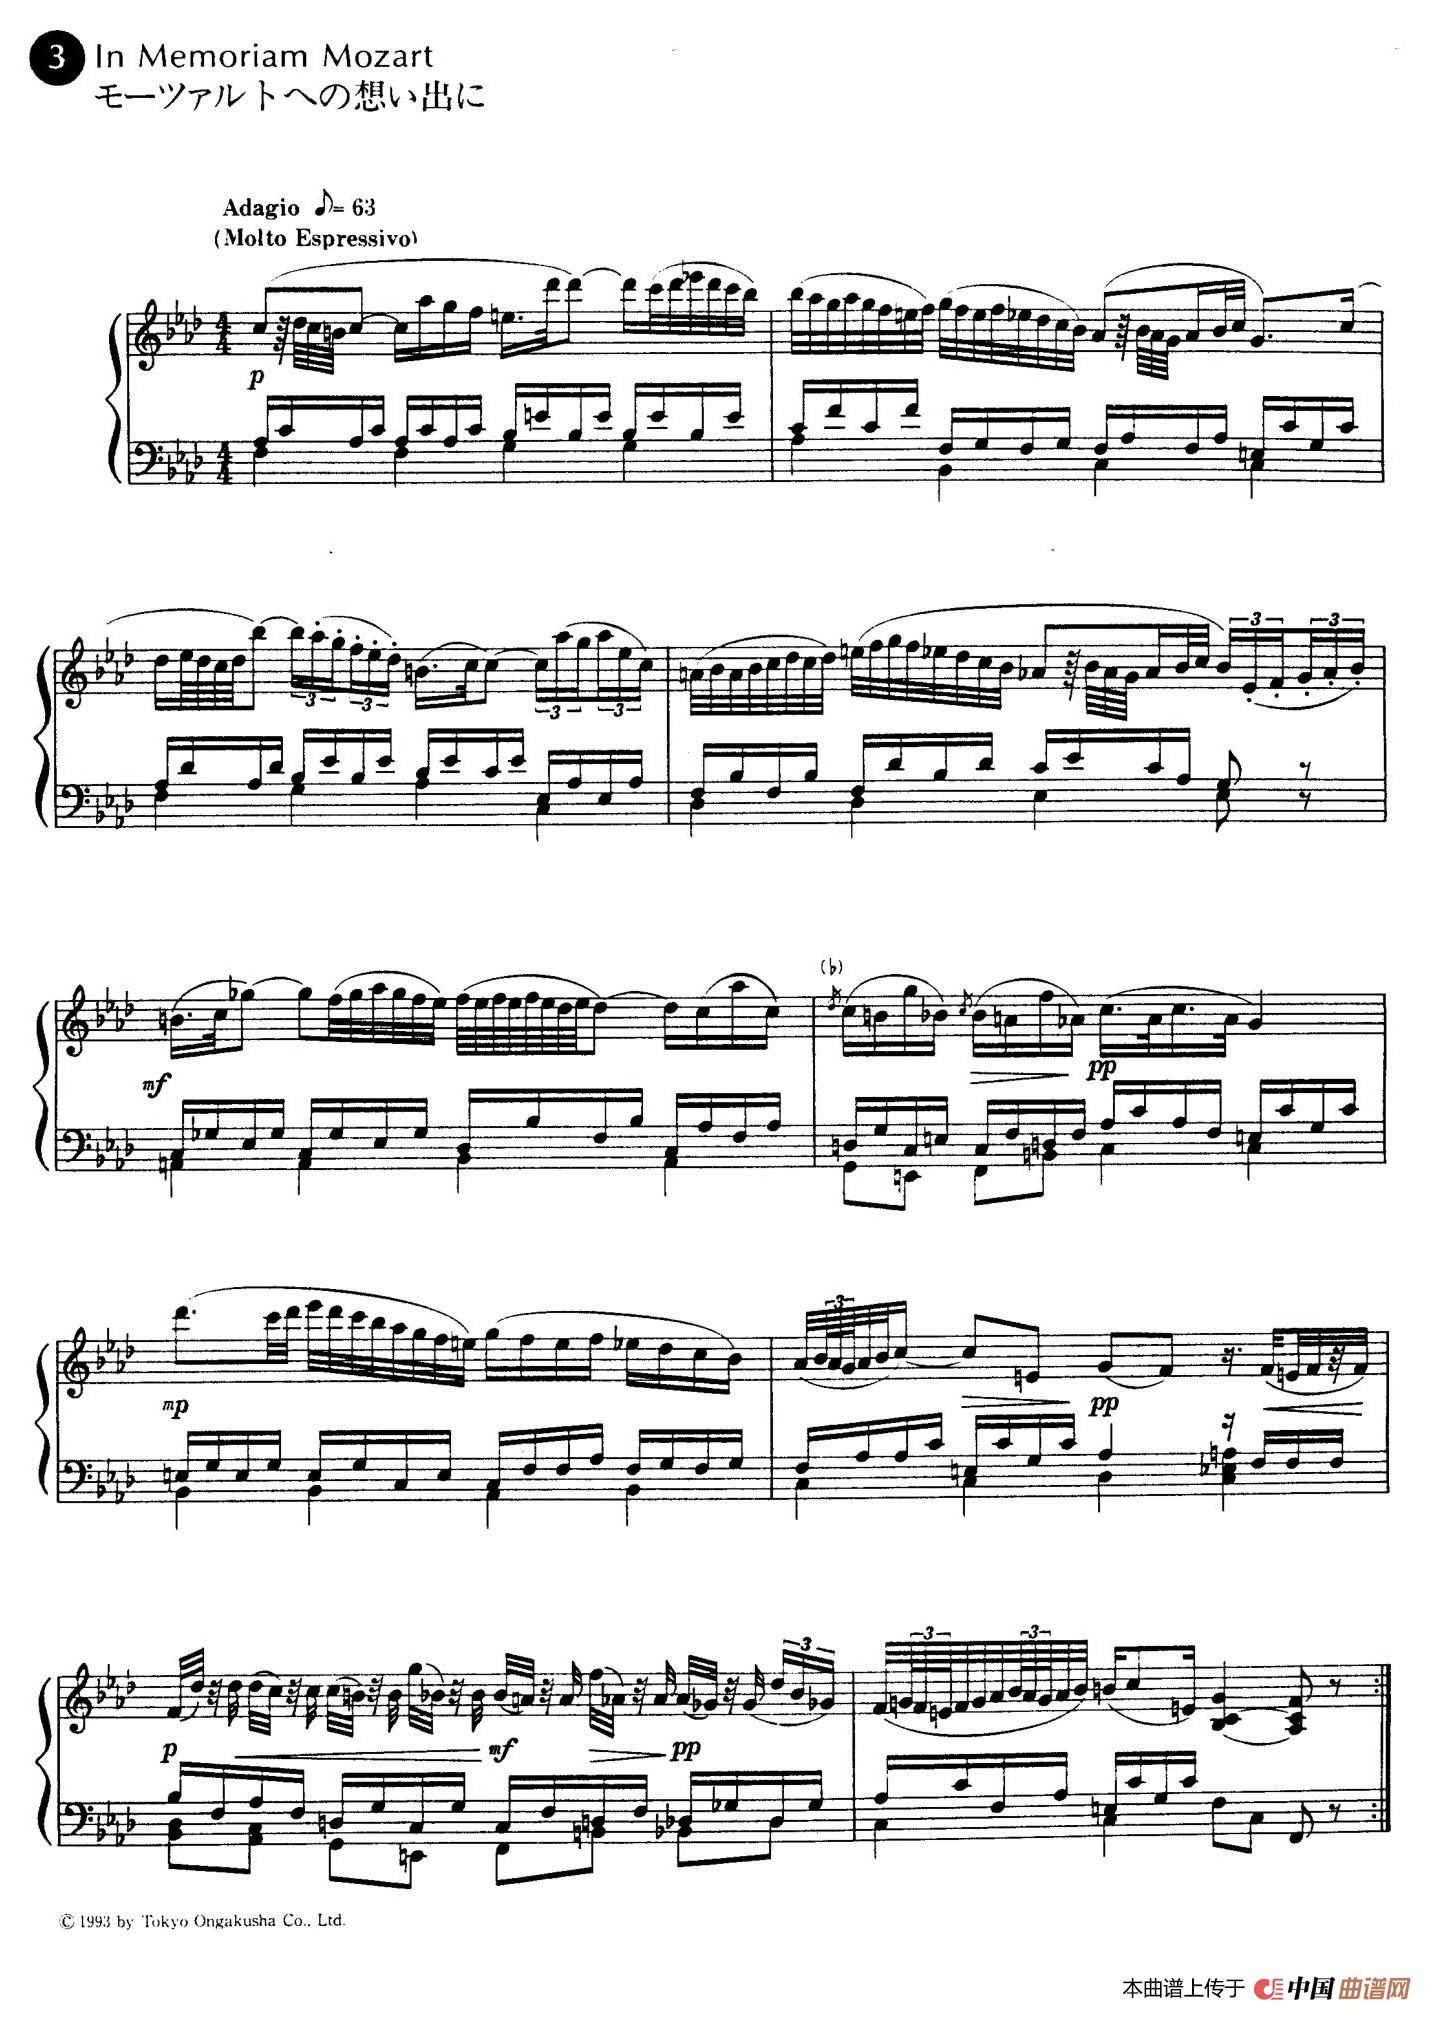 《In Memoriam Mozart》钢琴曲谱图分享